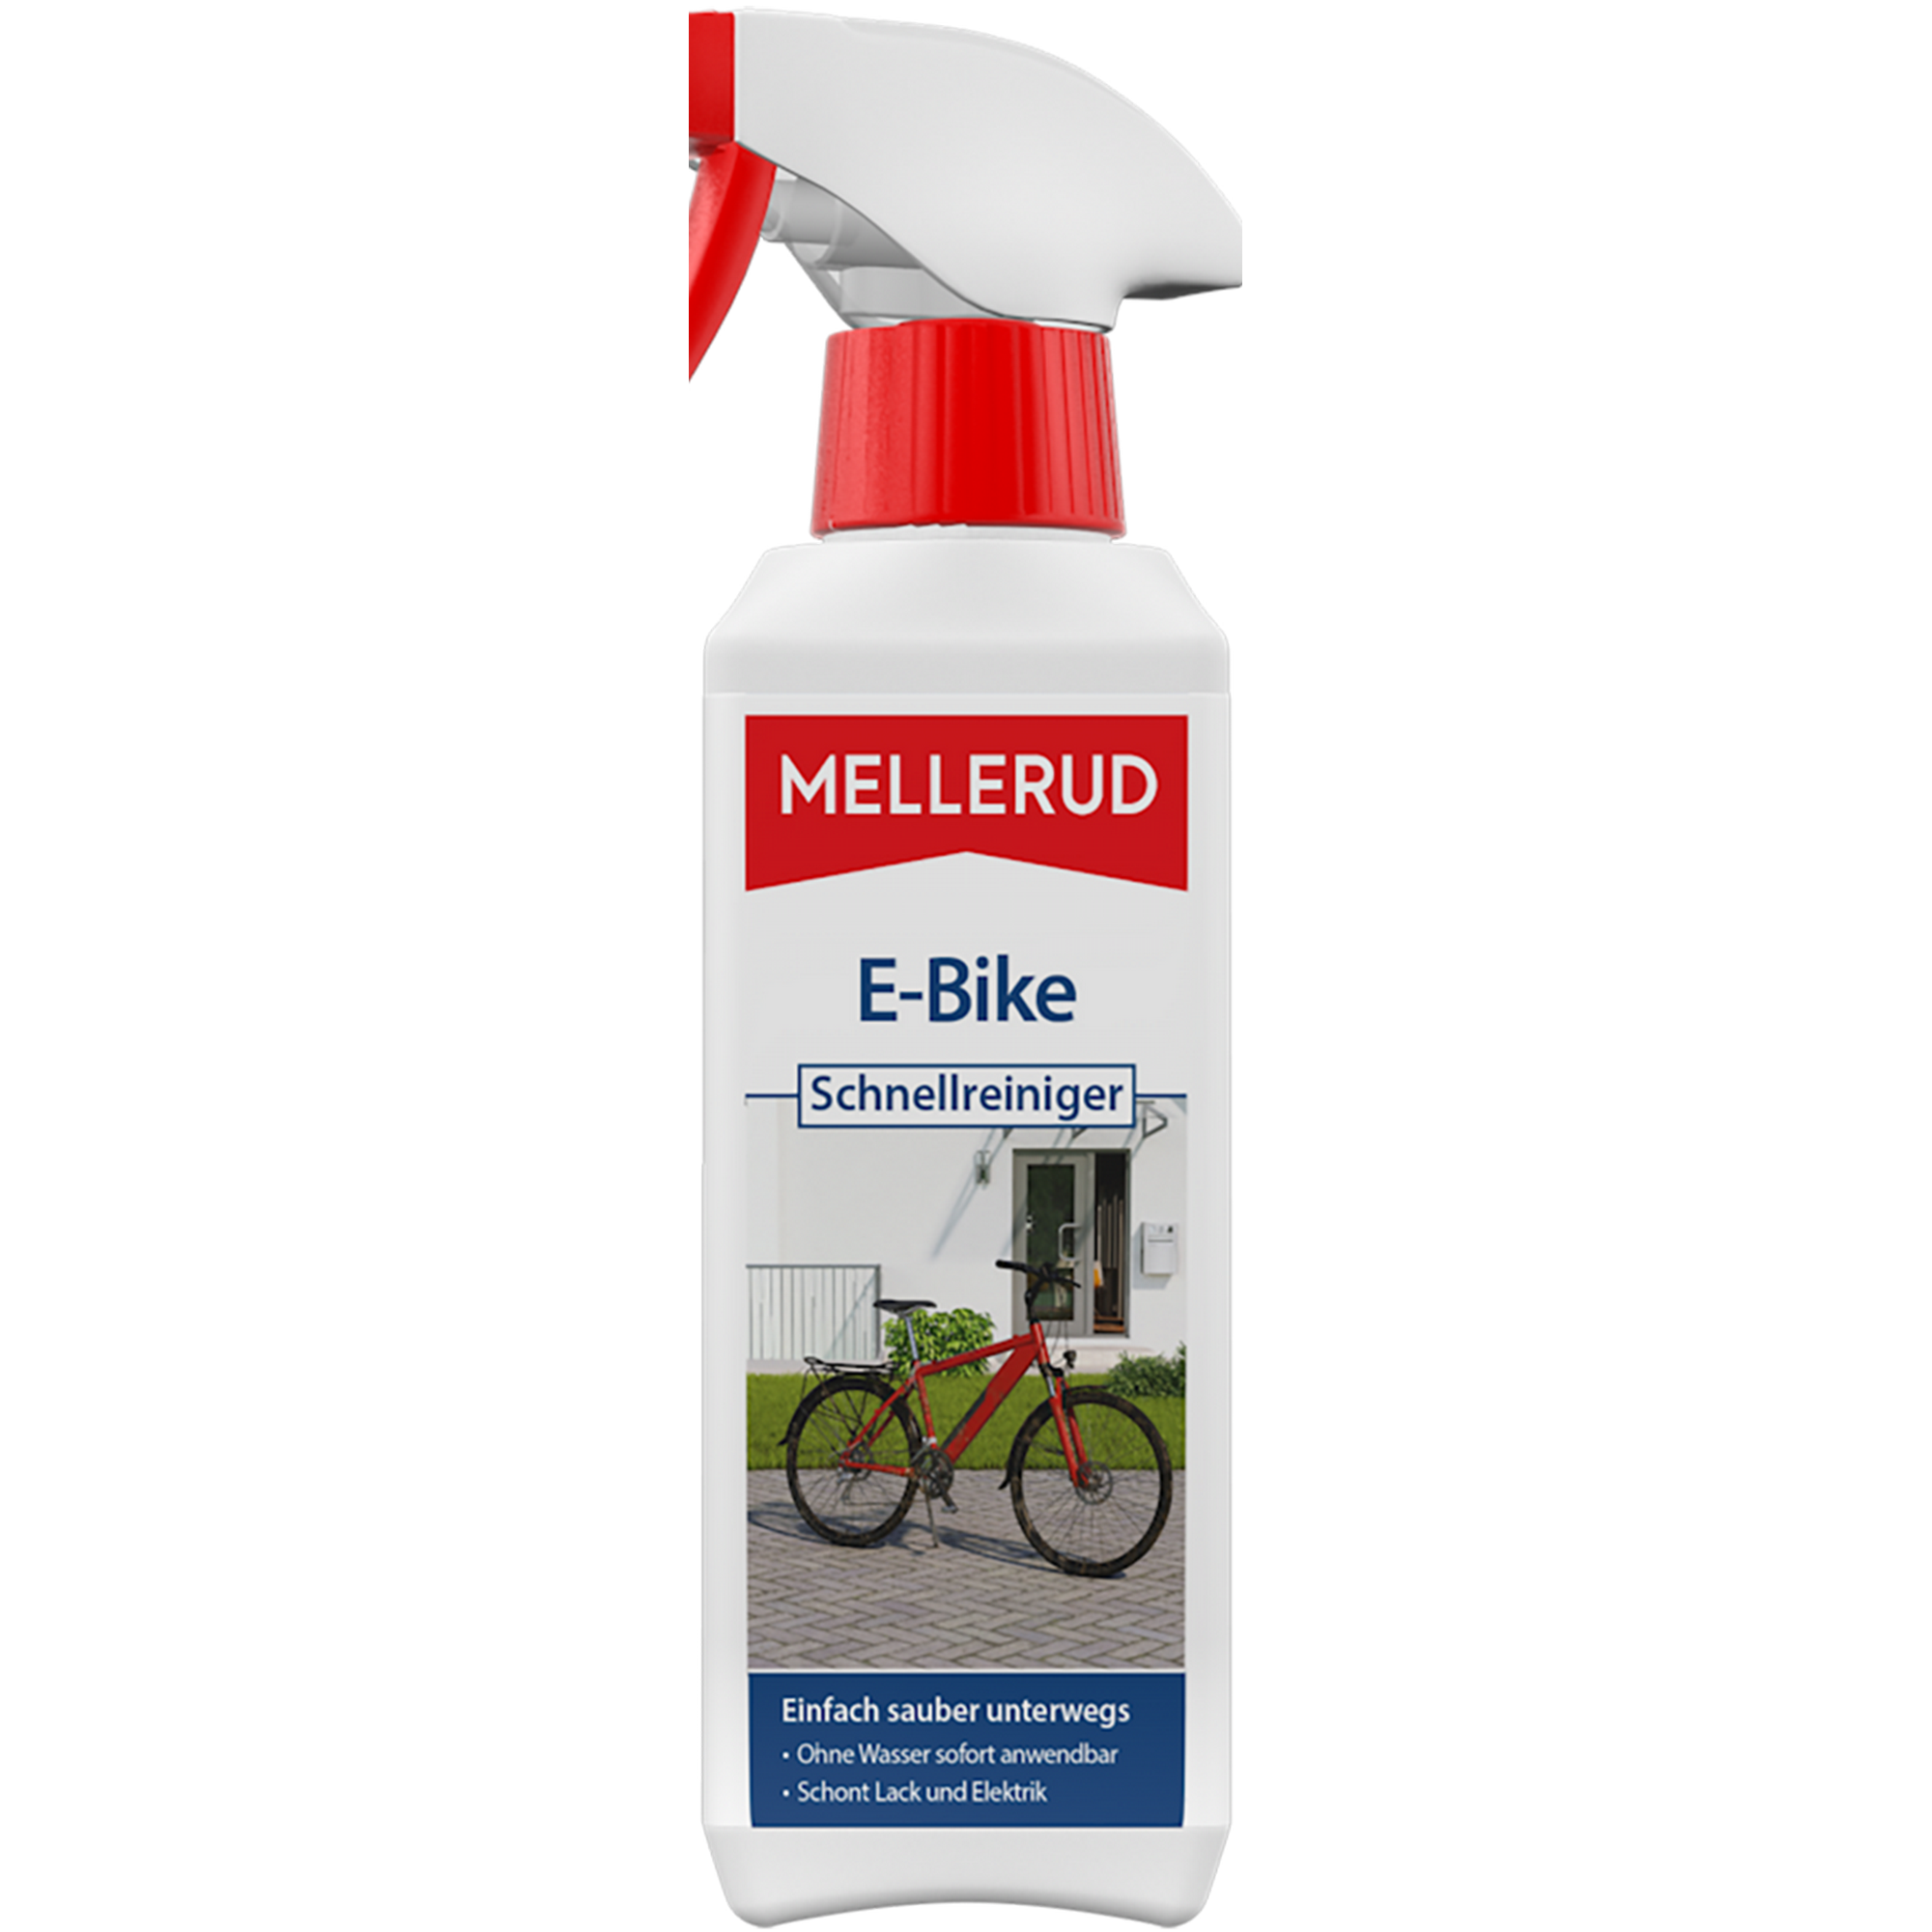 Schnellreiniger für E-Bikes 250 ml + product picture